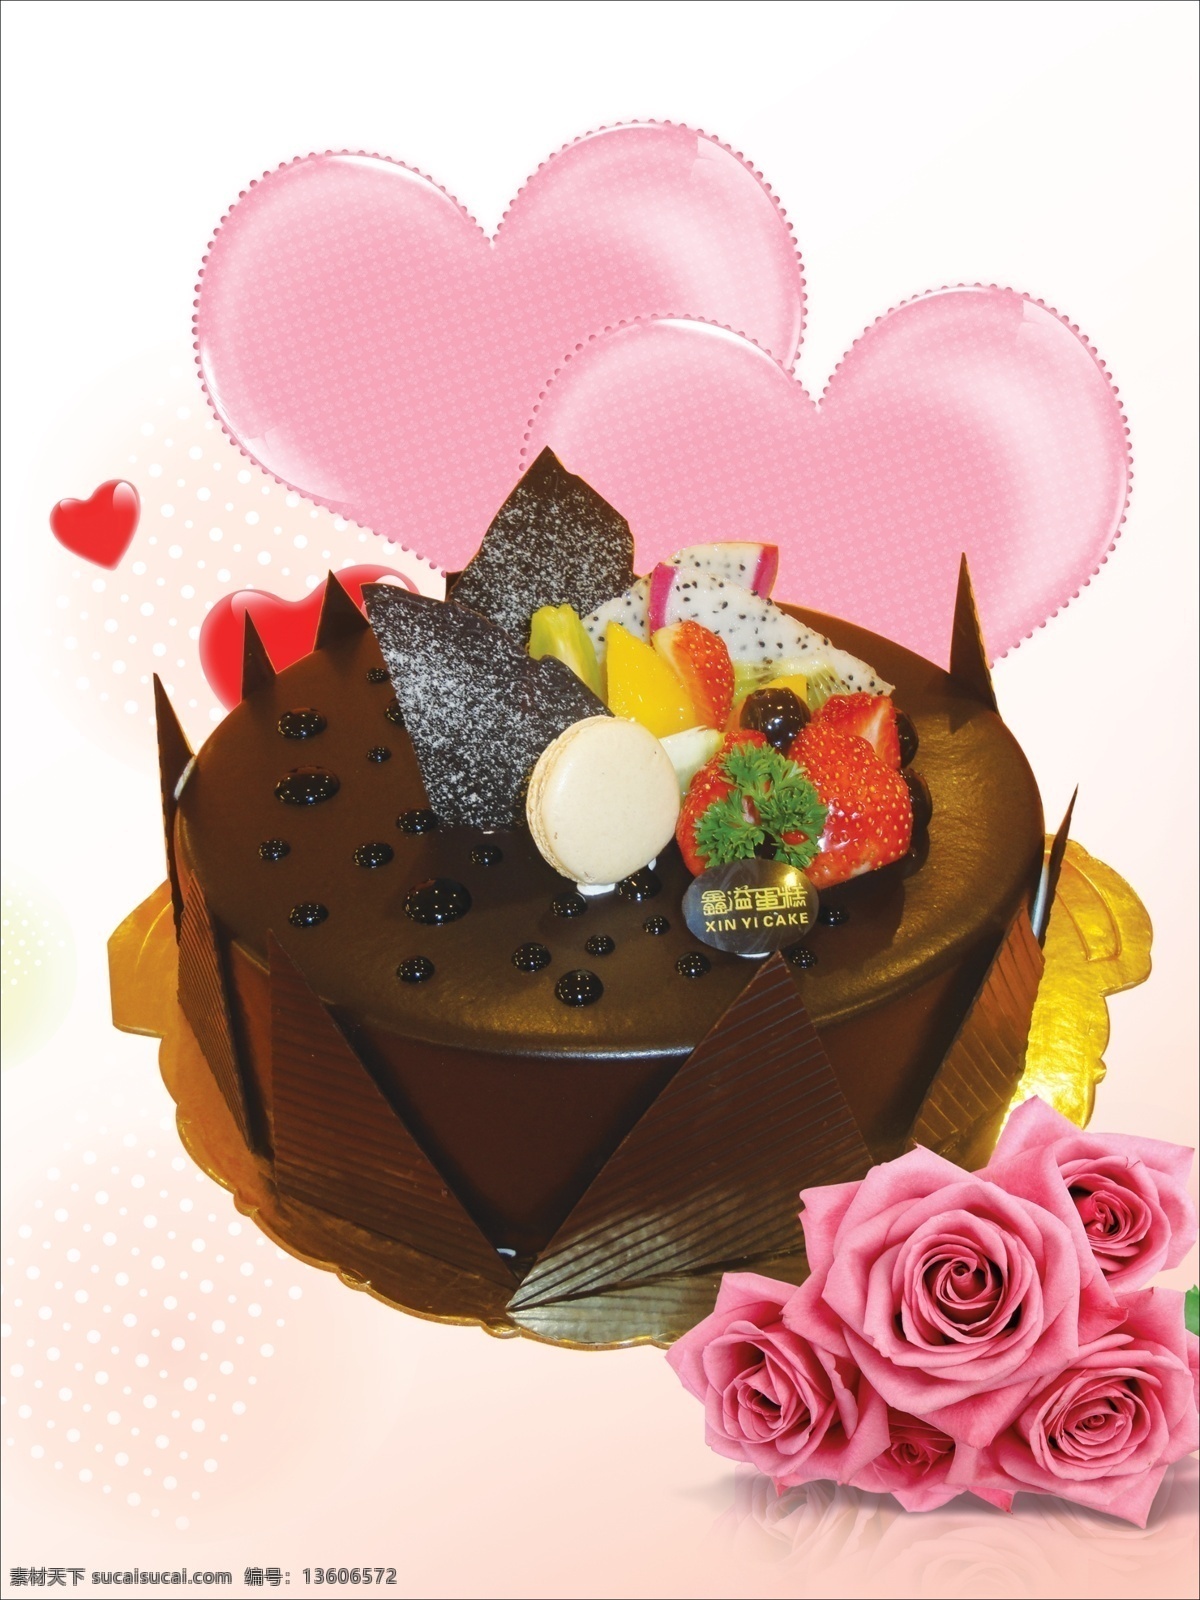 爱心 蛋糕背景 蛋糕灯箱 蛋糕海报 广告设计模板 玫瑰花 巧克力蛋糕 巧克力 蛋糕 模板下载 水果蛋糕 源文件 psd源文件